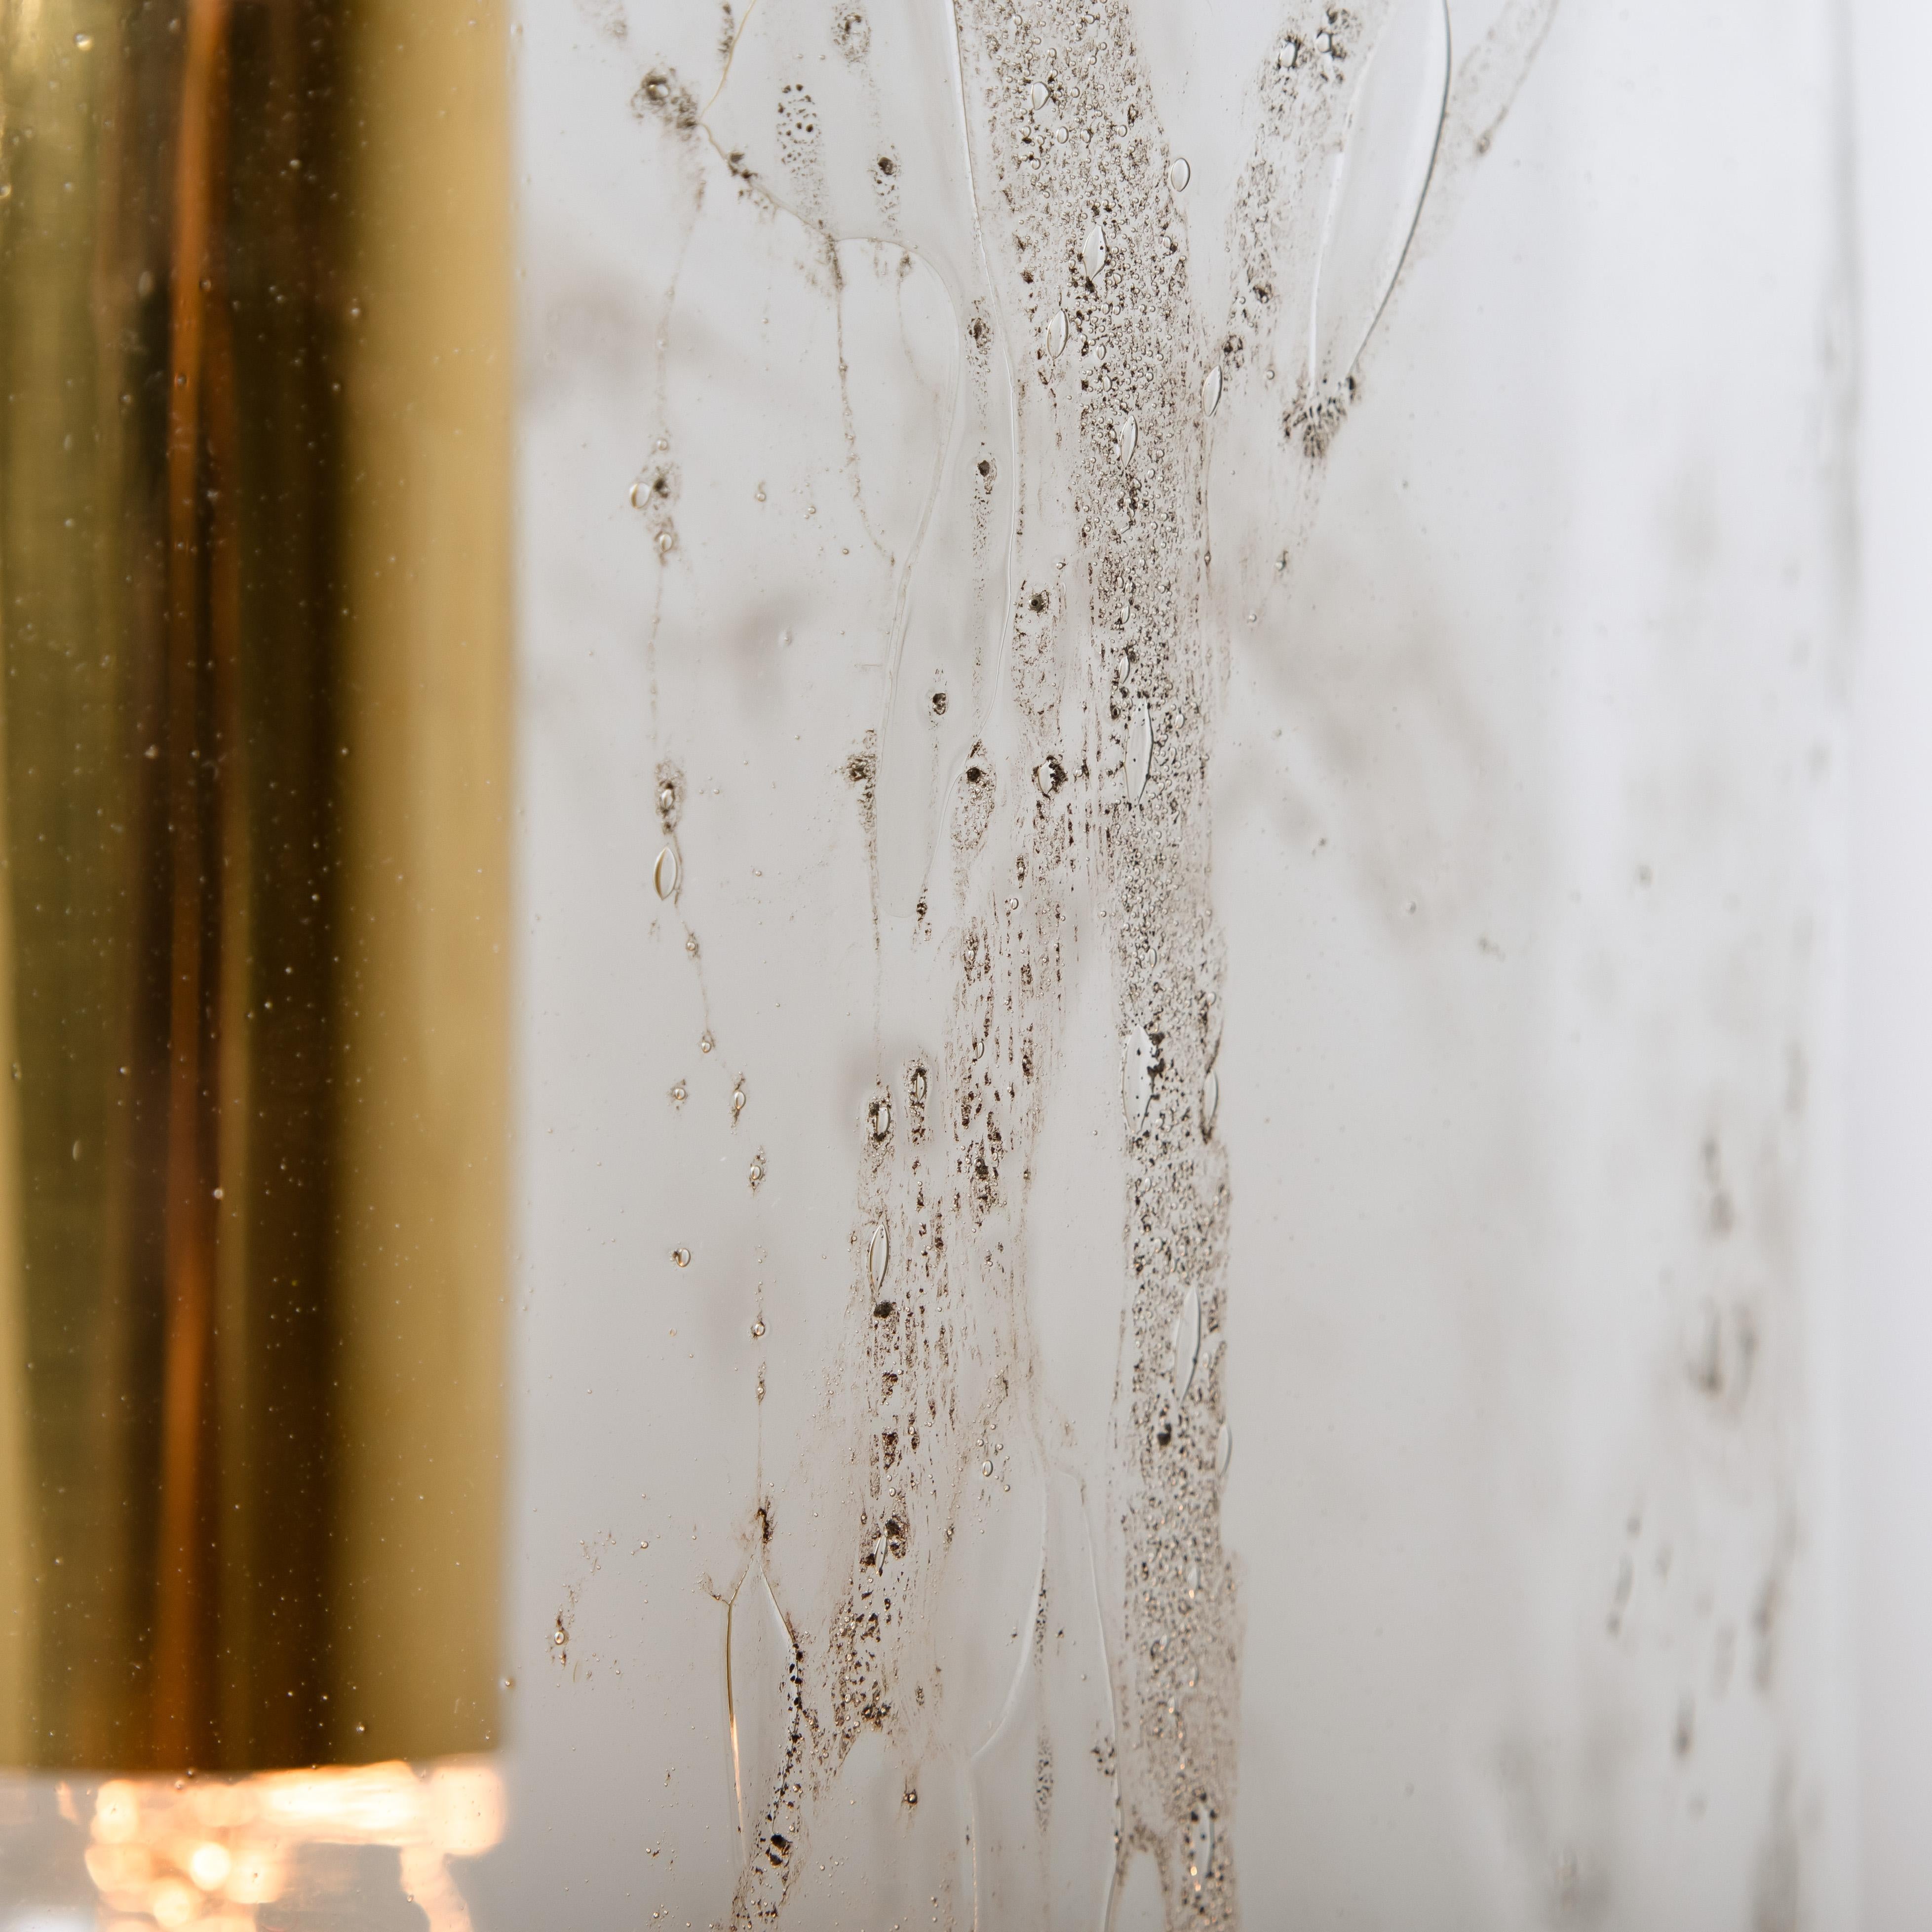 1 des 4 magnifiques lampes suspendues en verre bulle conçues par Doria. Des pièces haut de gamme du milieu du siècle. Un classique du design, le verre texturé soufflé à la main donne une merveilleuse lueur chaude. 

Les dimensions : Hauteur depuis